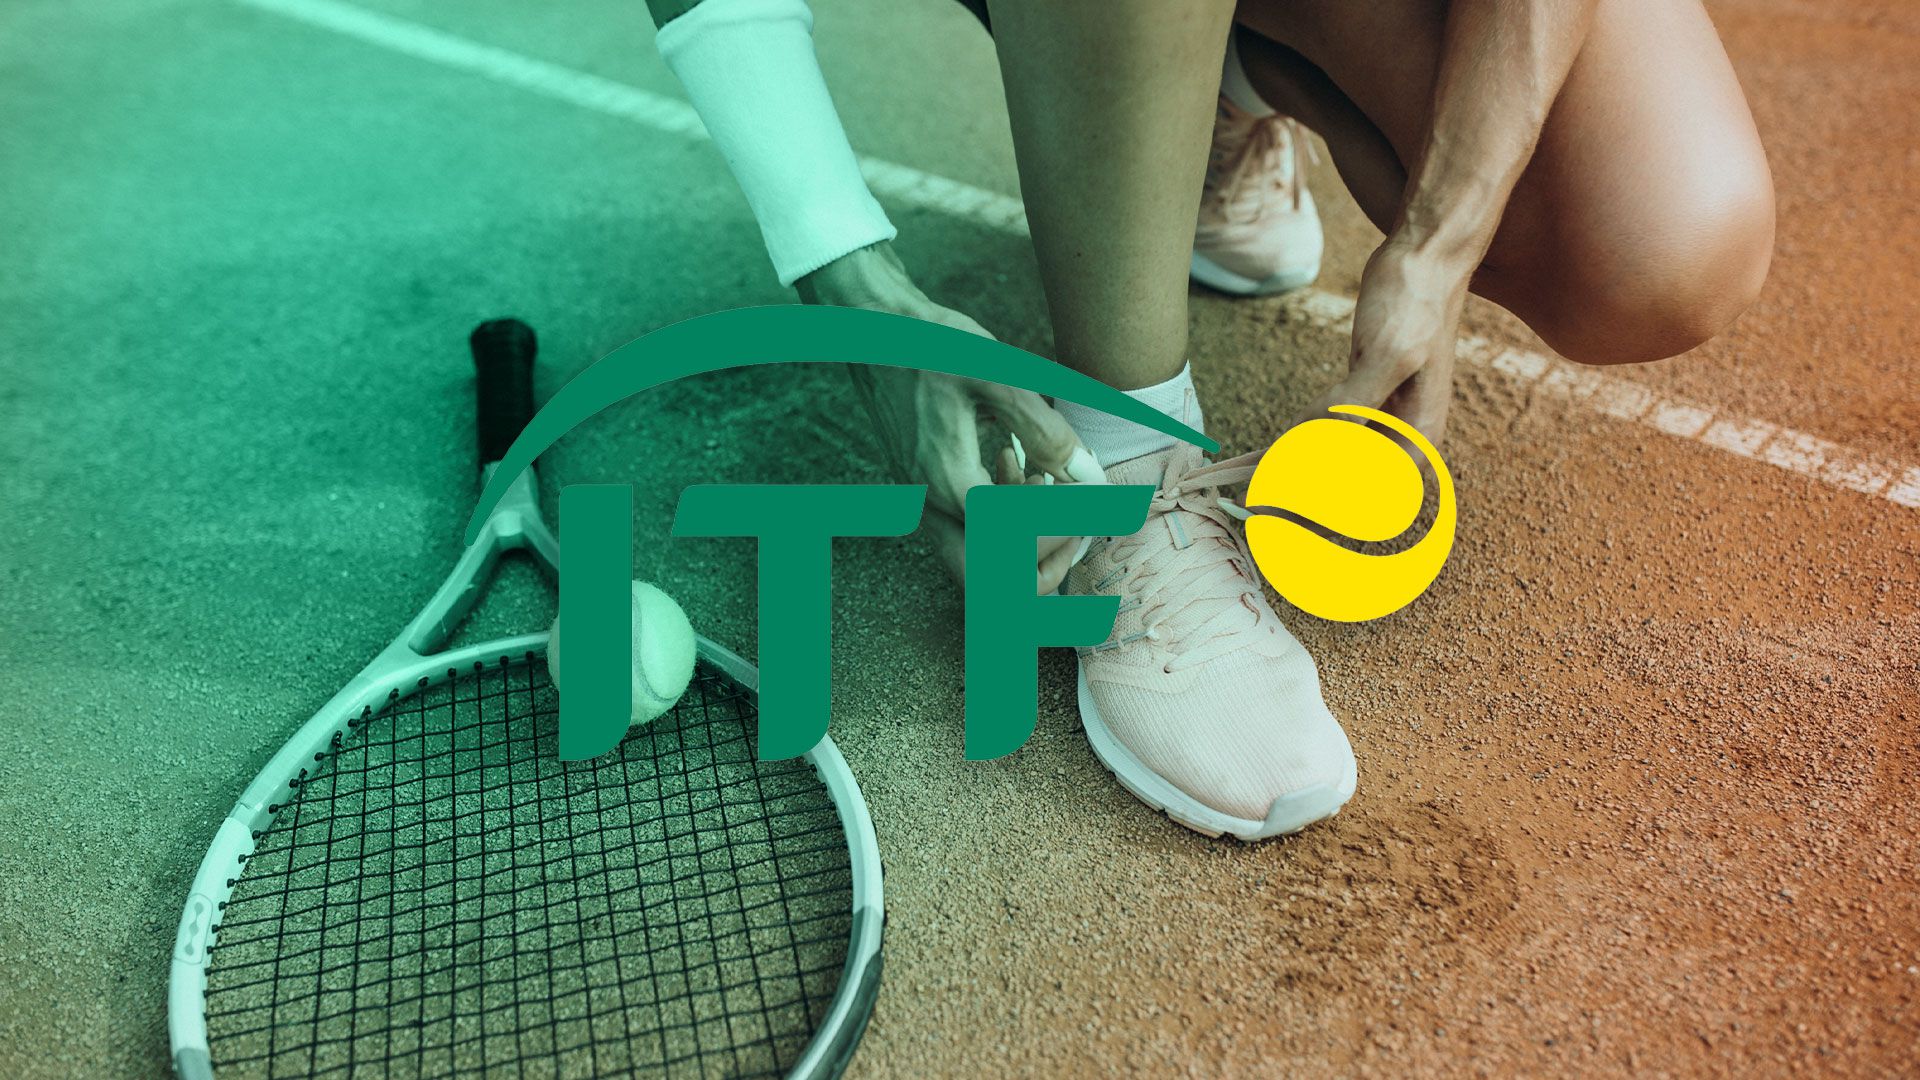 TIEBREAK: El juego oficial de la ATP y WTA  ¿Nueva info? ¿Qué espero y  quiero? ¿Lanzamiento? 🤔🎾 